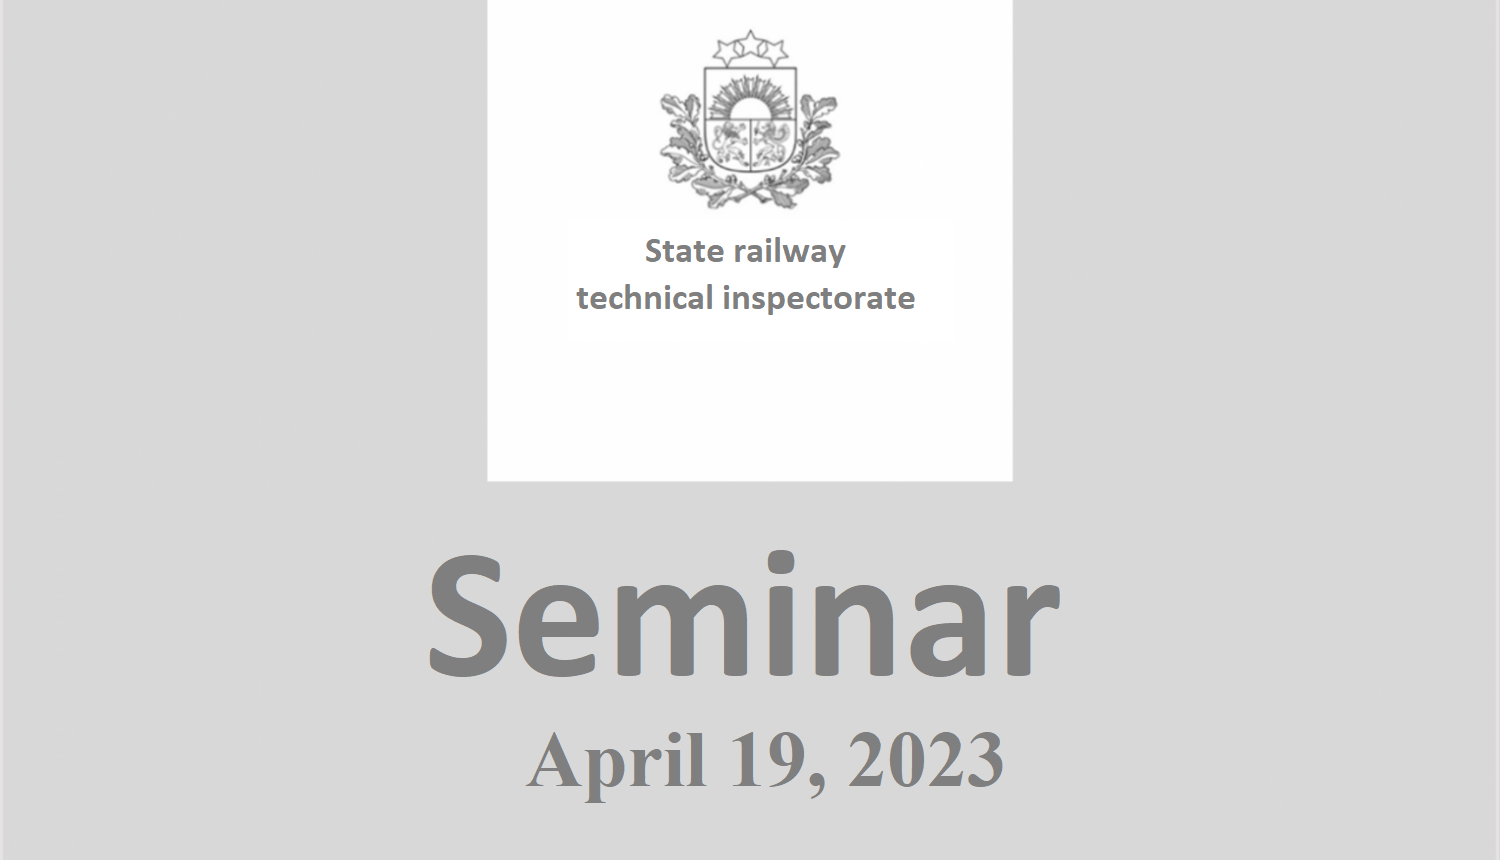 Seminar April 19, 2023